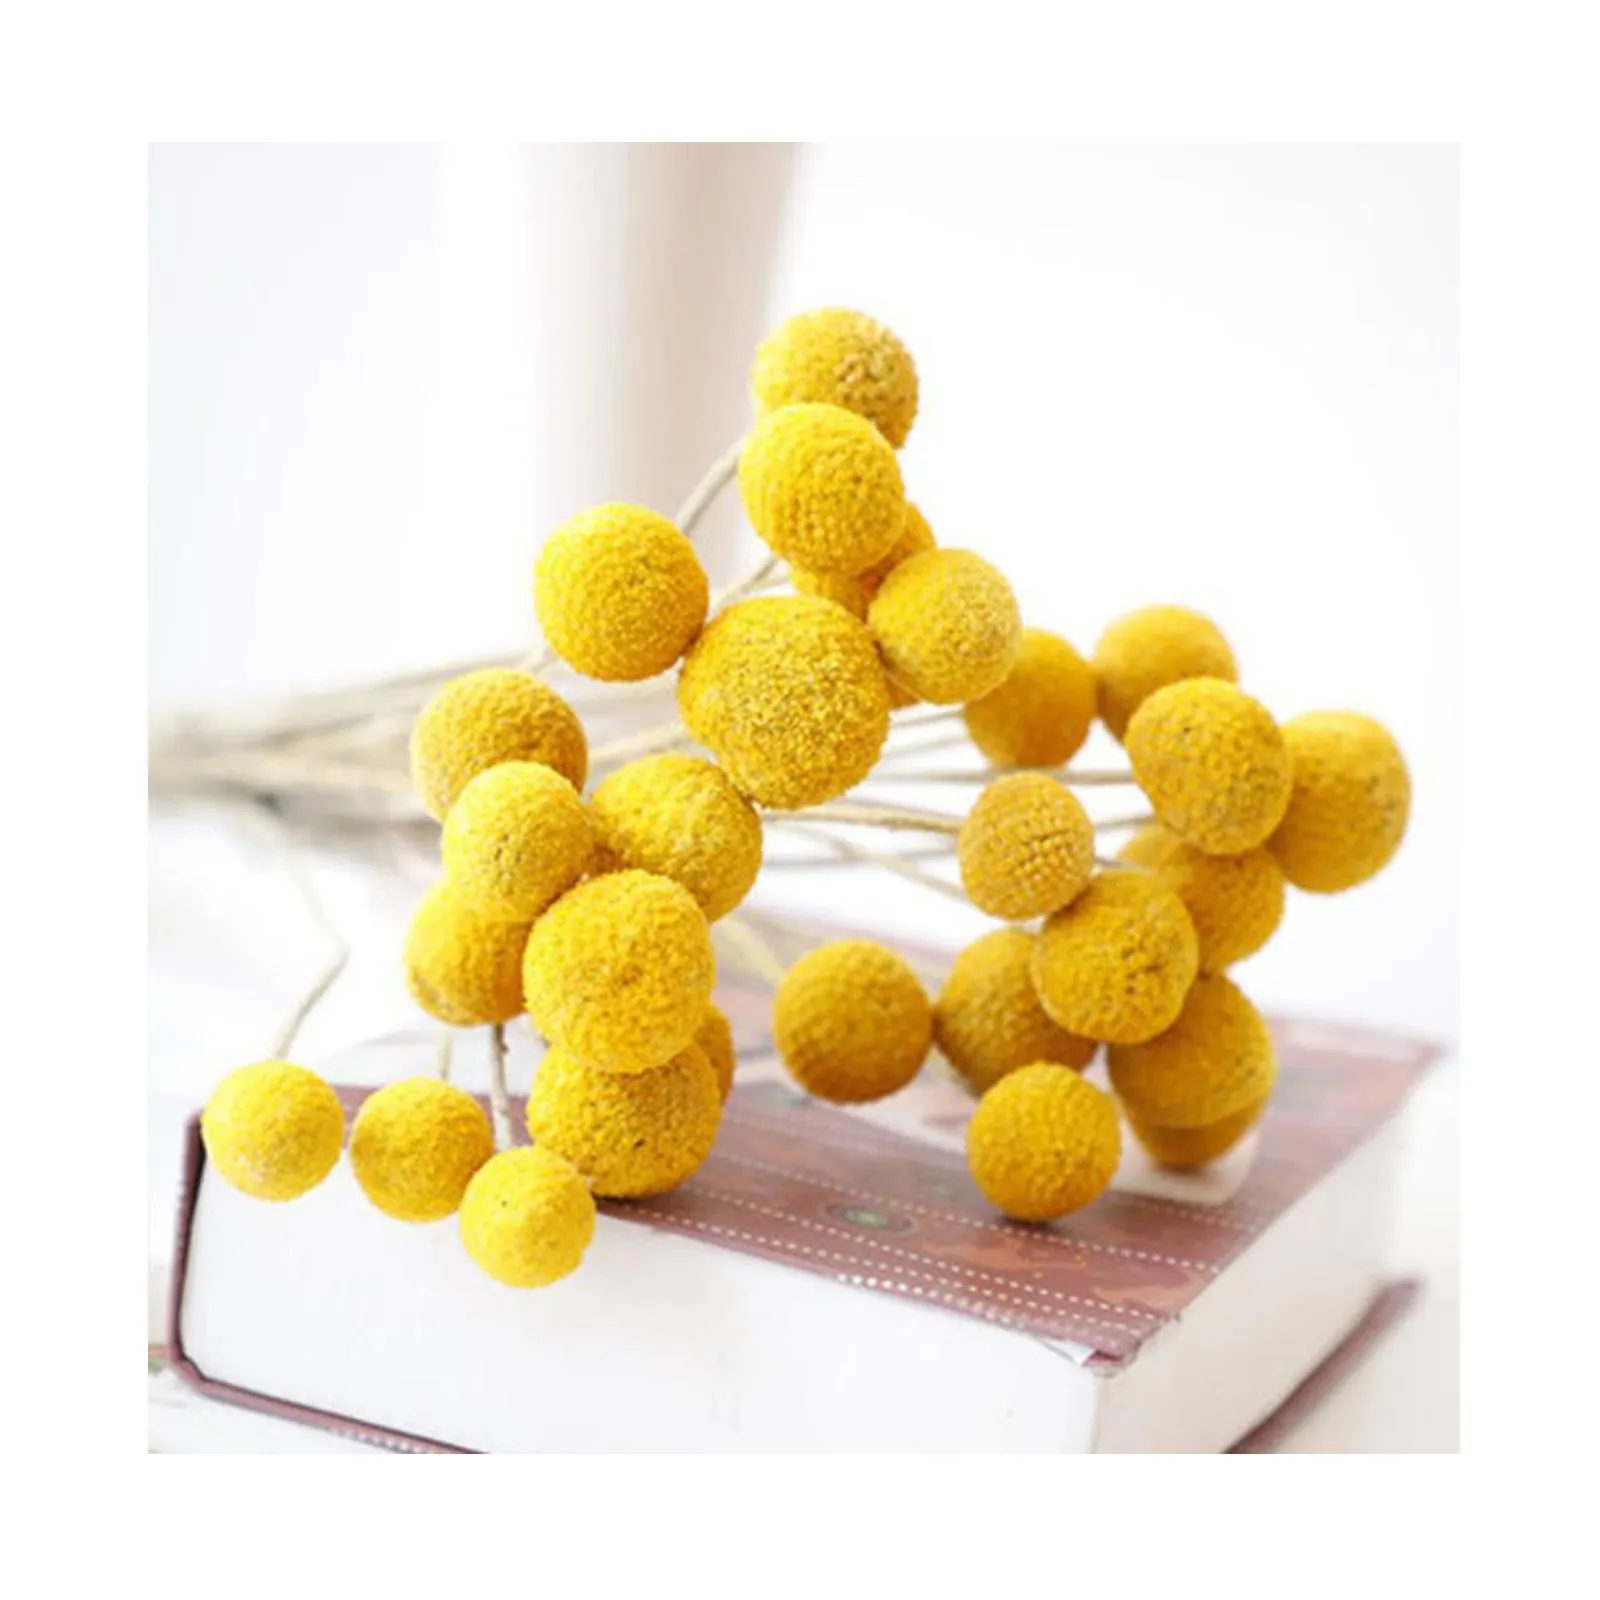 Dried Craspedia Flowers Billy Button Balls Balls Falso Seta gialla Accessori per la casa Decorazioni artificiali